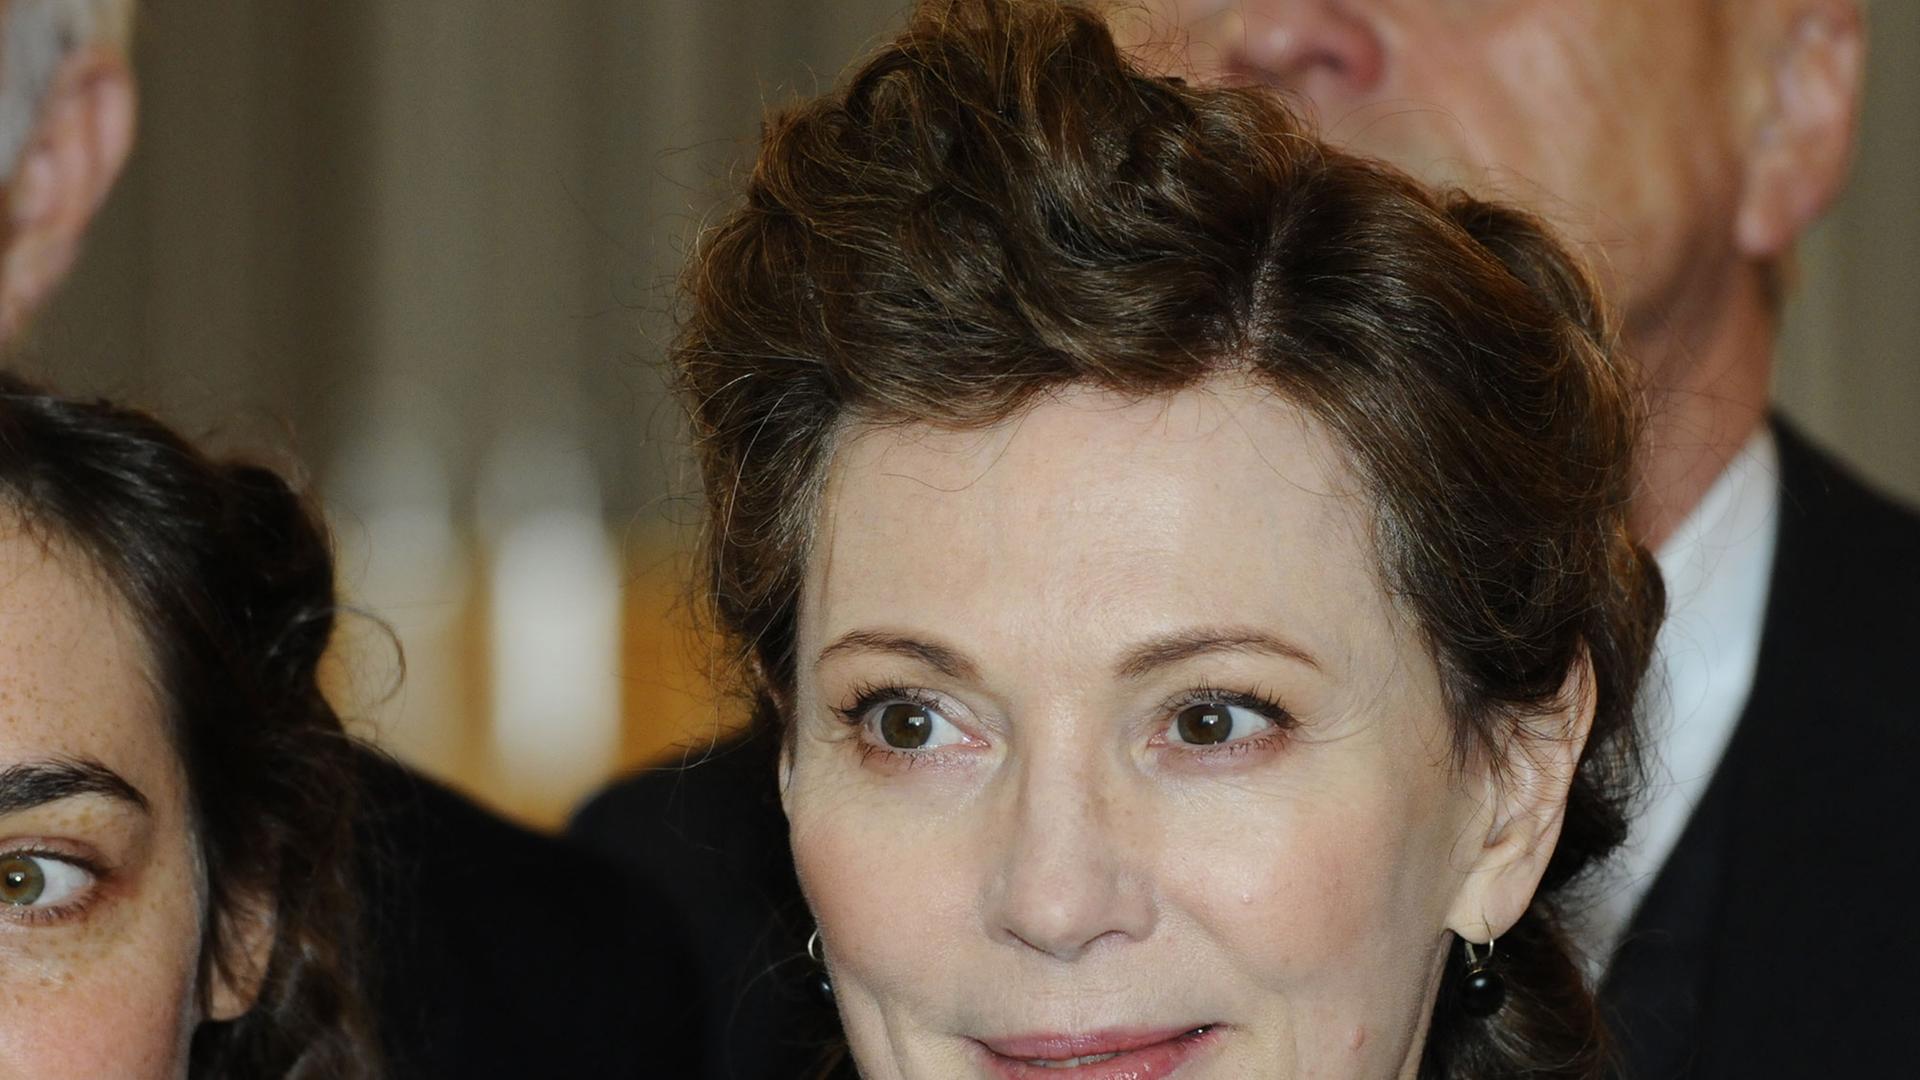 Die Schauspielerin Iris Berben als Abgeordnete und Juristin Elisabeth Selbert in dem historischen ARD TV-Drama "Sternstunde ihres Lebens".